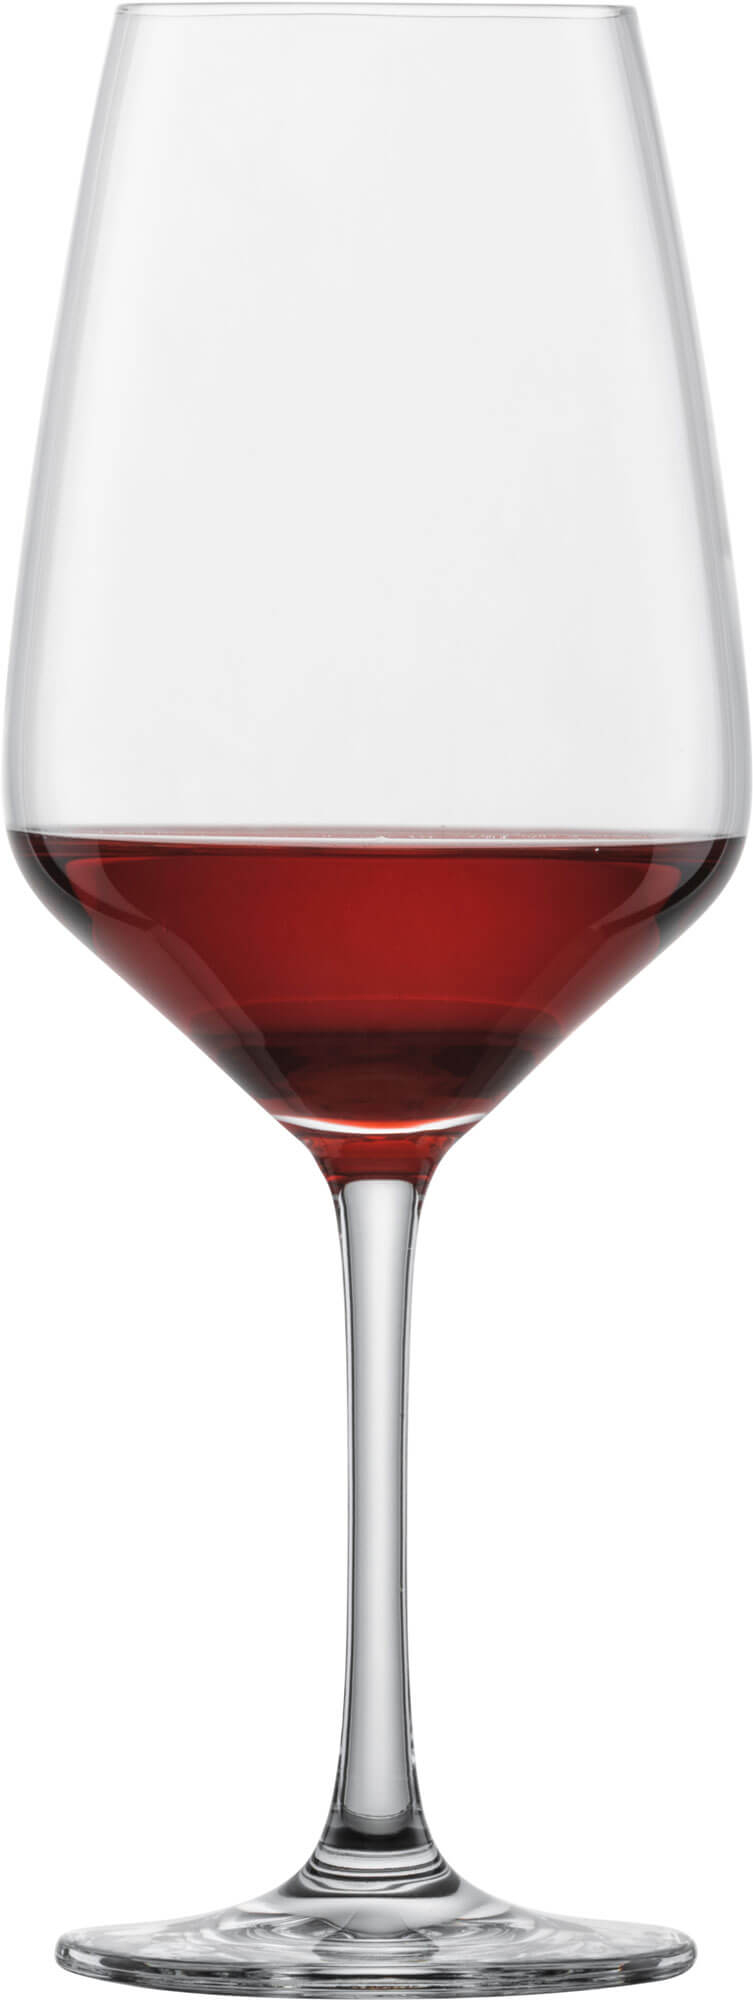 Rotweinglas Taste, Schott Zwiesel - 497ml (1 Stk.)